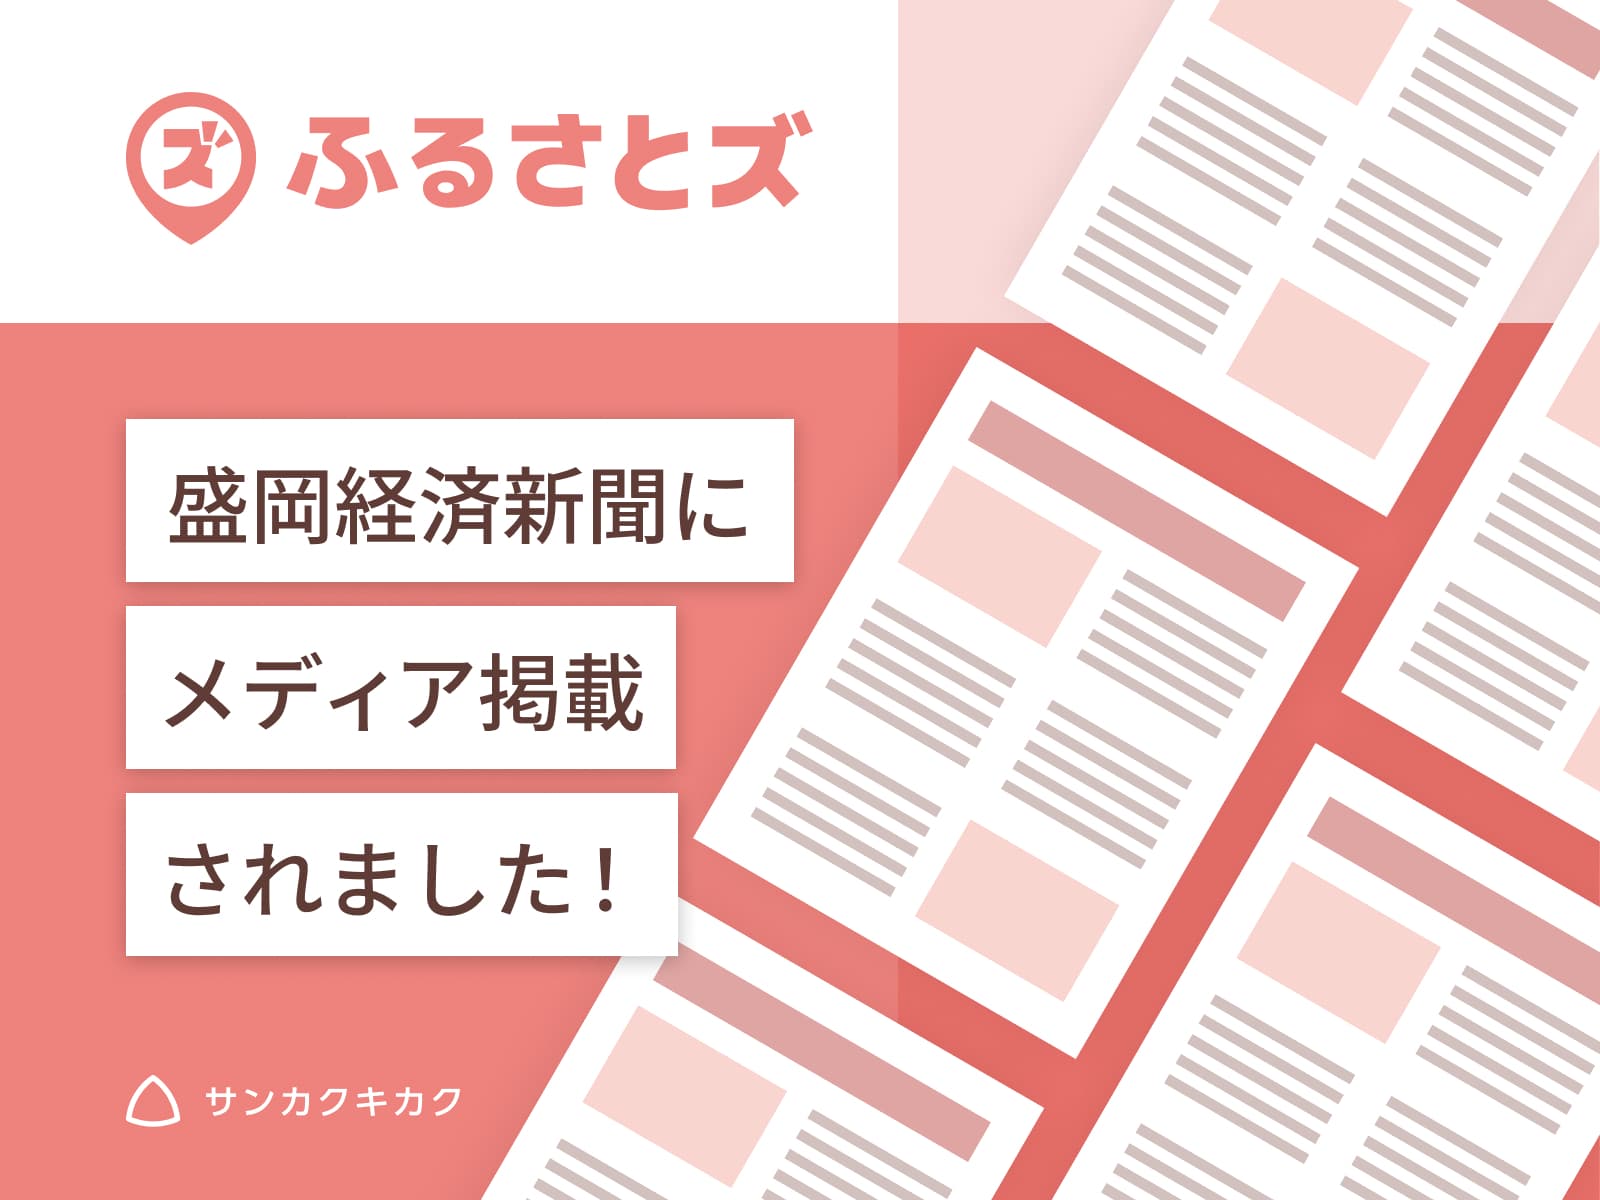 ふるさとズ｜岩手県紫波町での導入開始のプレスリリースが盛岡経済新聞で掲載されました。